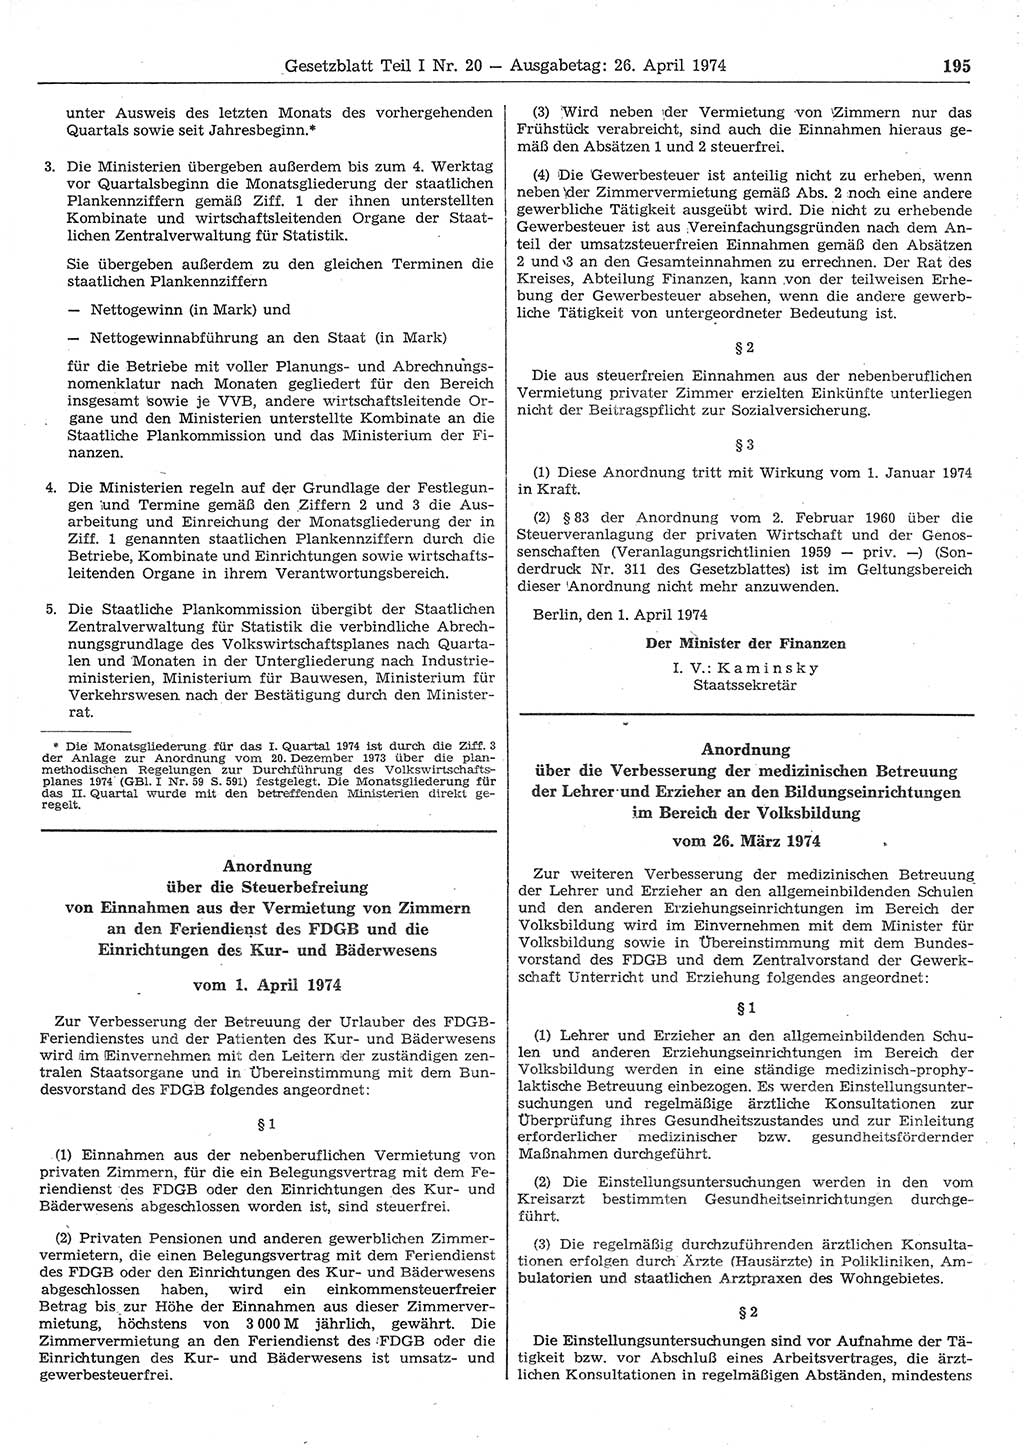 Gesetzblatt (GBl.) der Deutschen Demokratischen Republik (DDR) Teil Ⅰ 1974, Seite 195 (GBl. DDR Ⅰ 1974, S. 195)